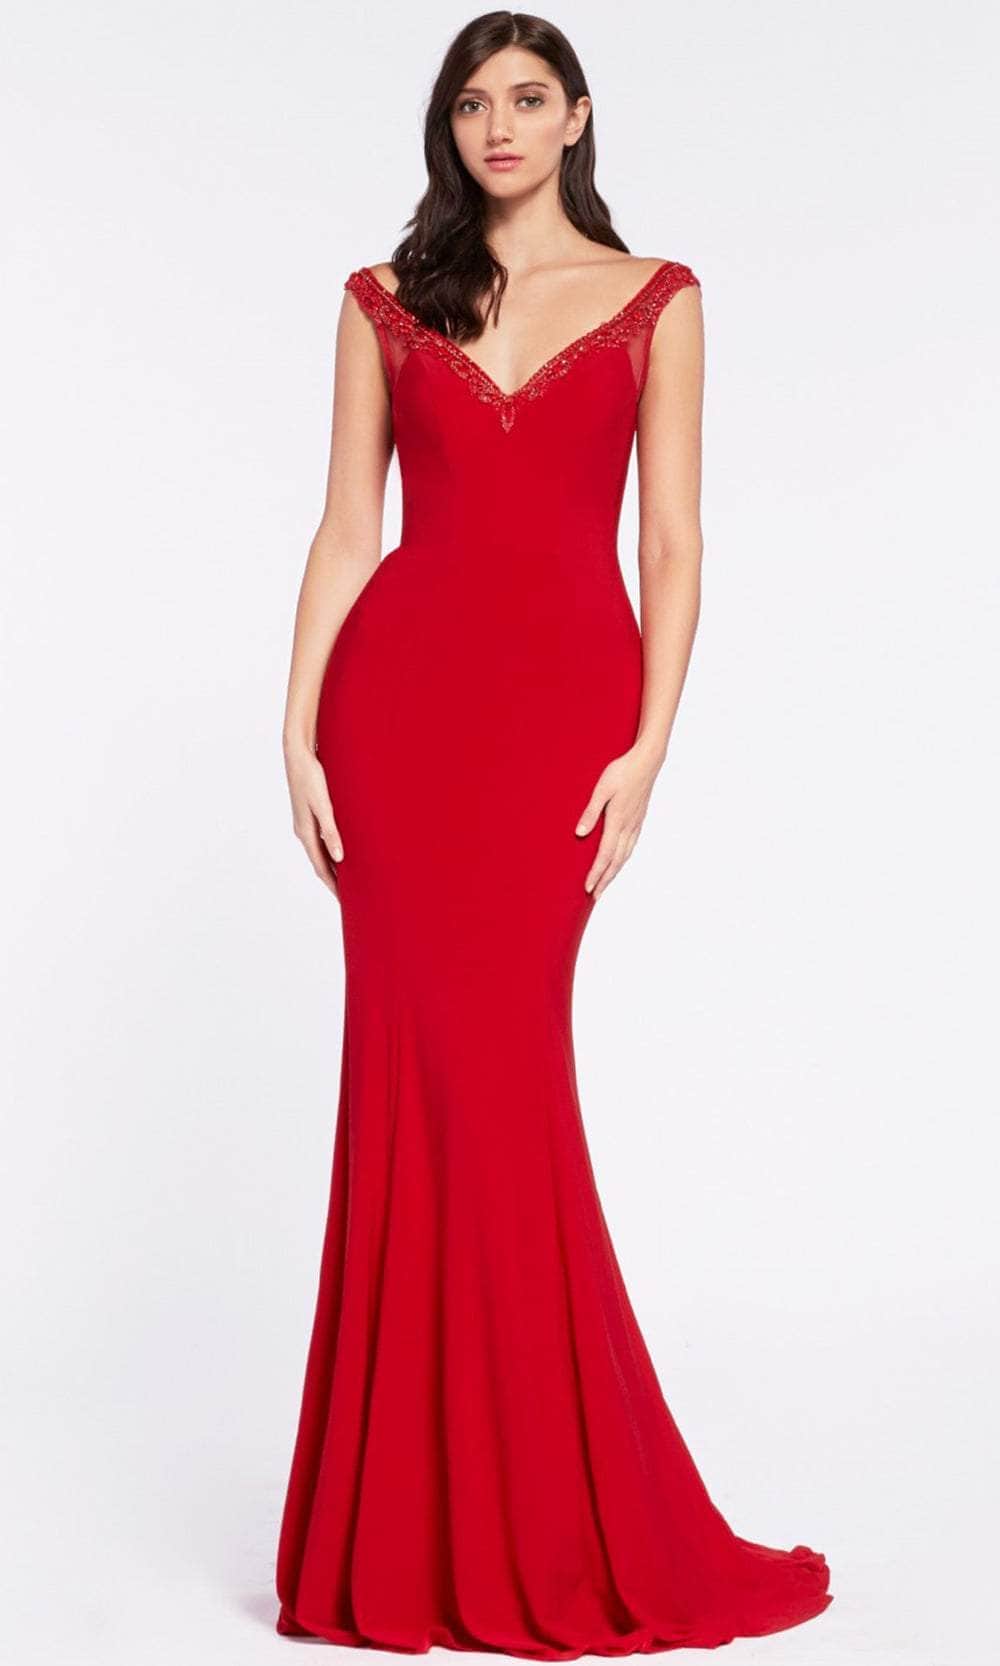 Ladivine RV712 Prom Dresses 6 / Red